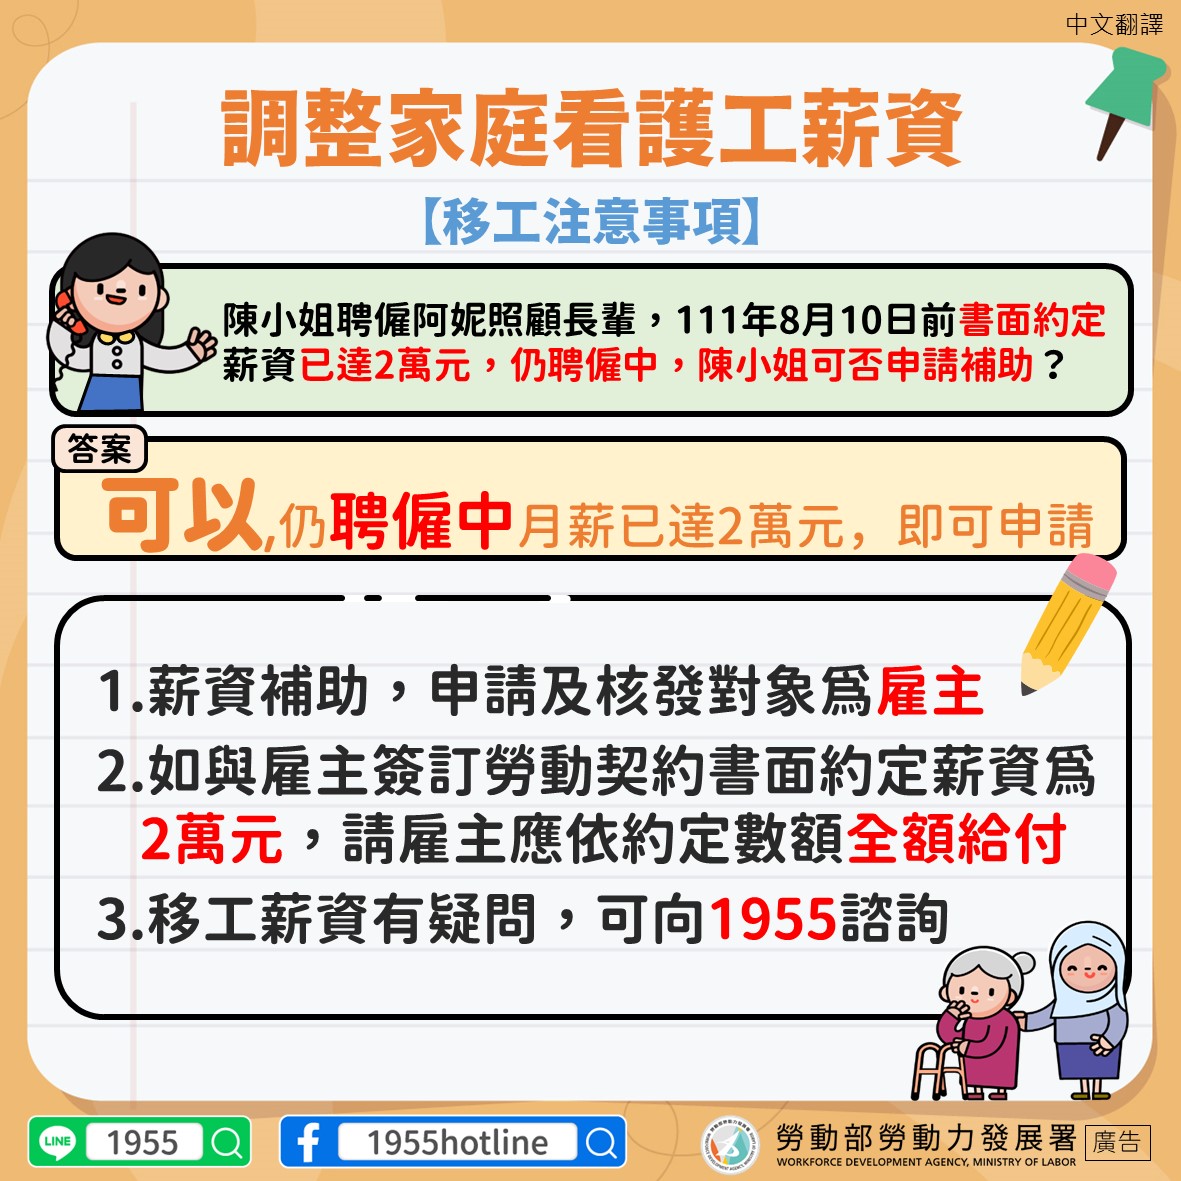 1110830-聘僱中薪資已達2萬元可以請領薪資補助-移工版-中文翻譯.JPG